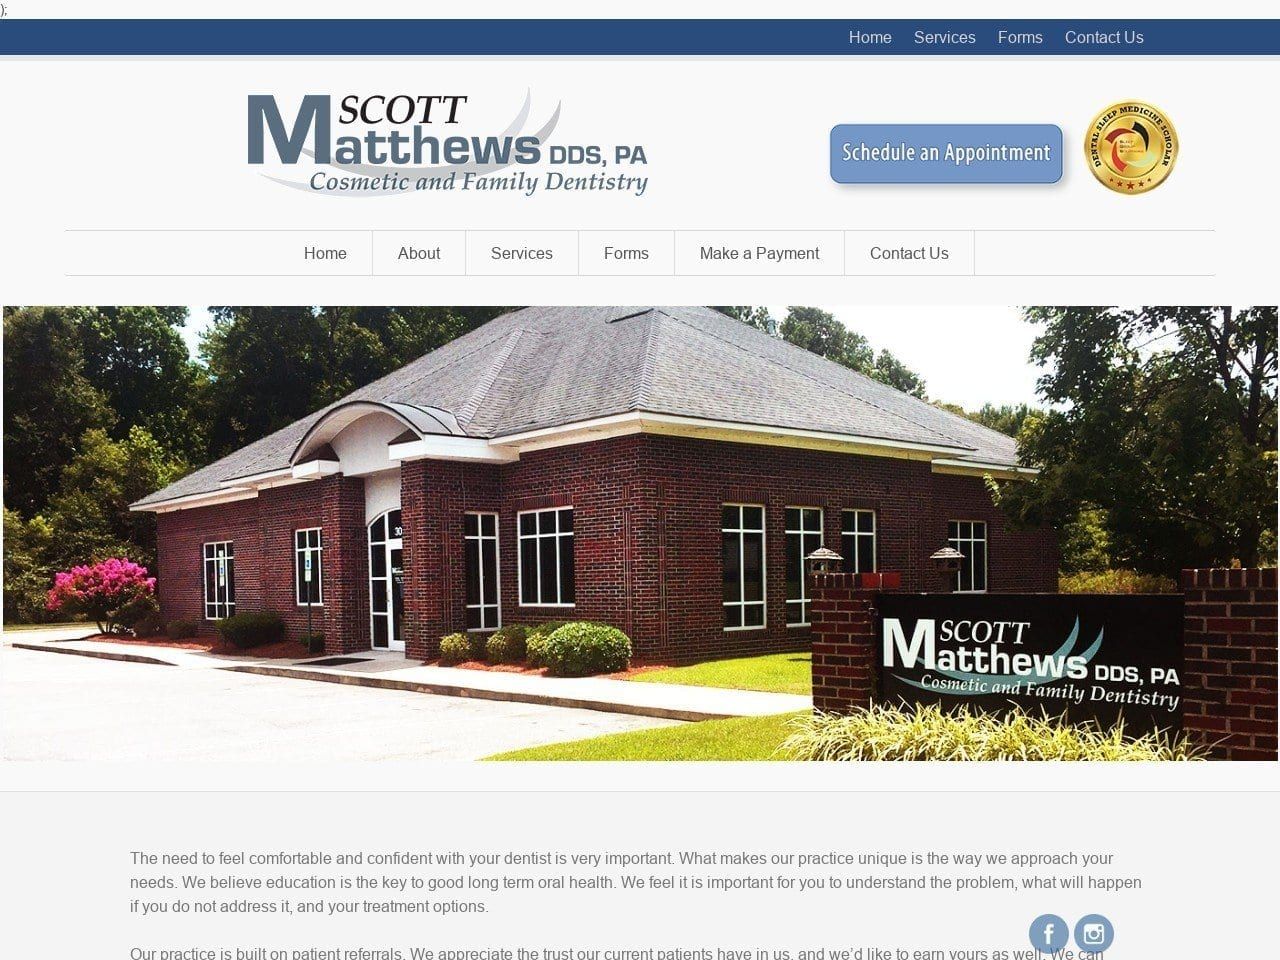 Scott B Matthews DDS PA Website Screenshot from scottmatthewsdds.com